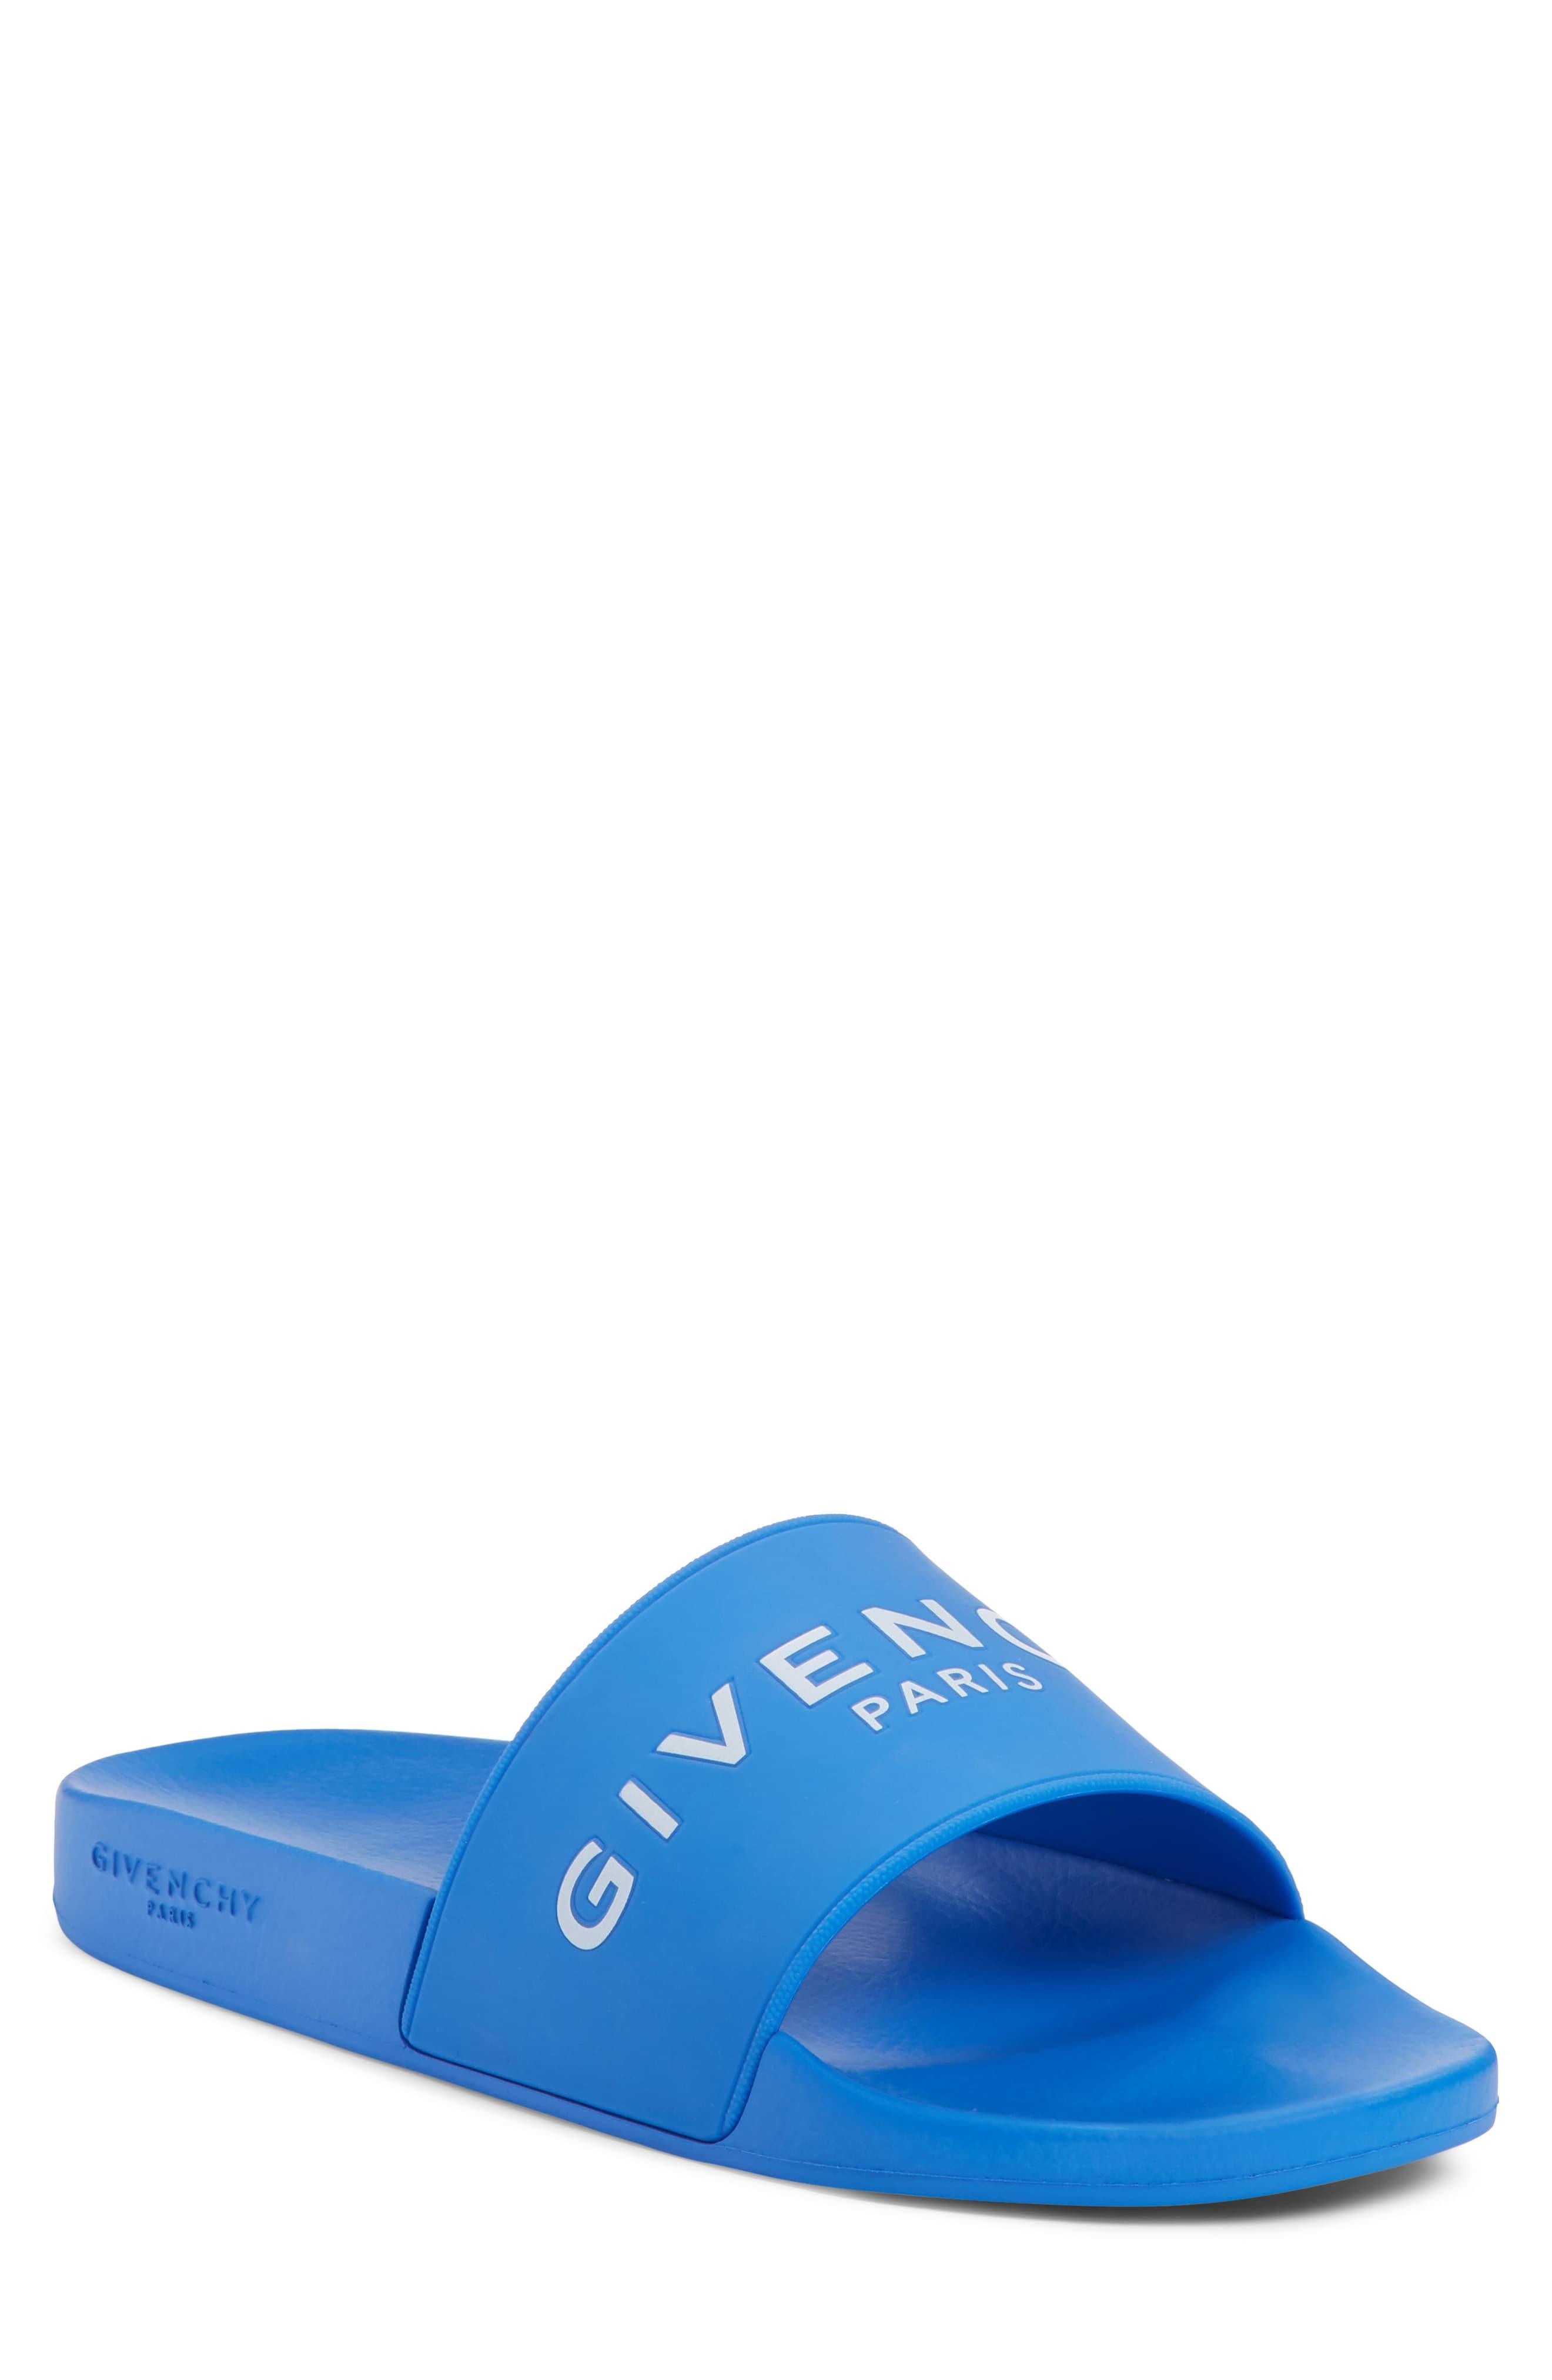 givenchy slides blue